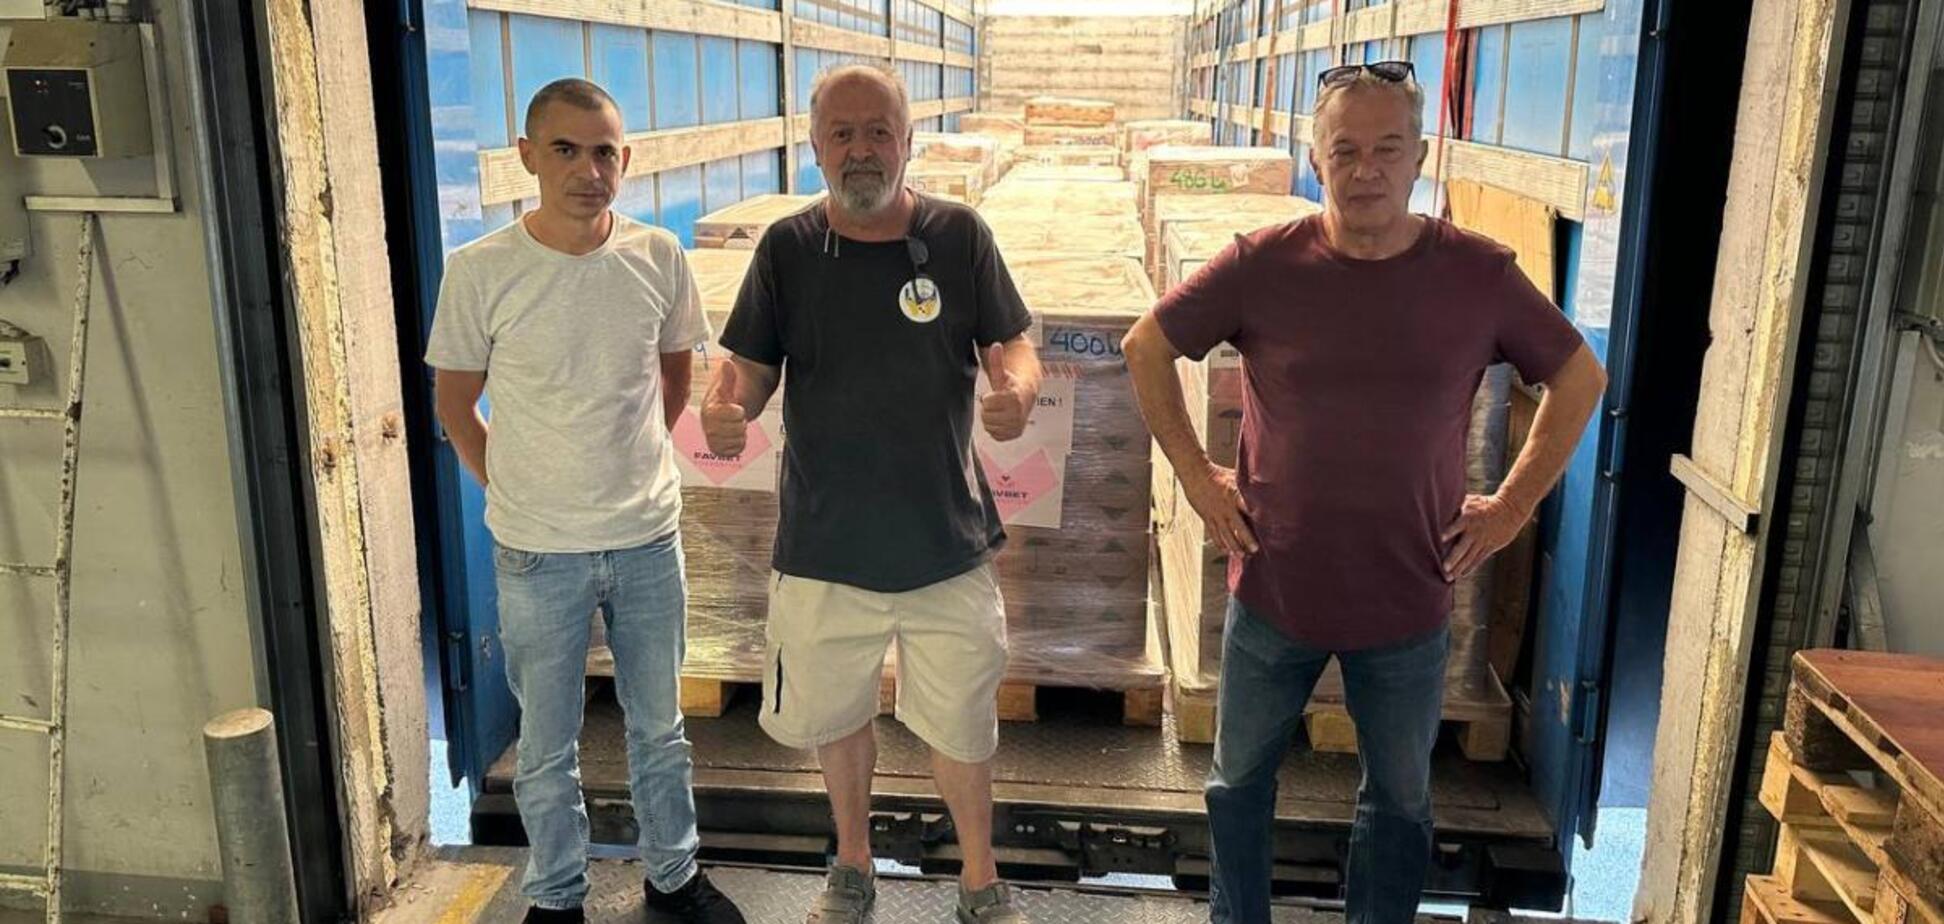 Продукты, одежда и не только: в Украину доставлена партия гумпомощи из Хорватии при поддержке Favbet Foundation